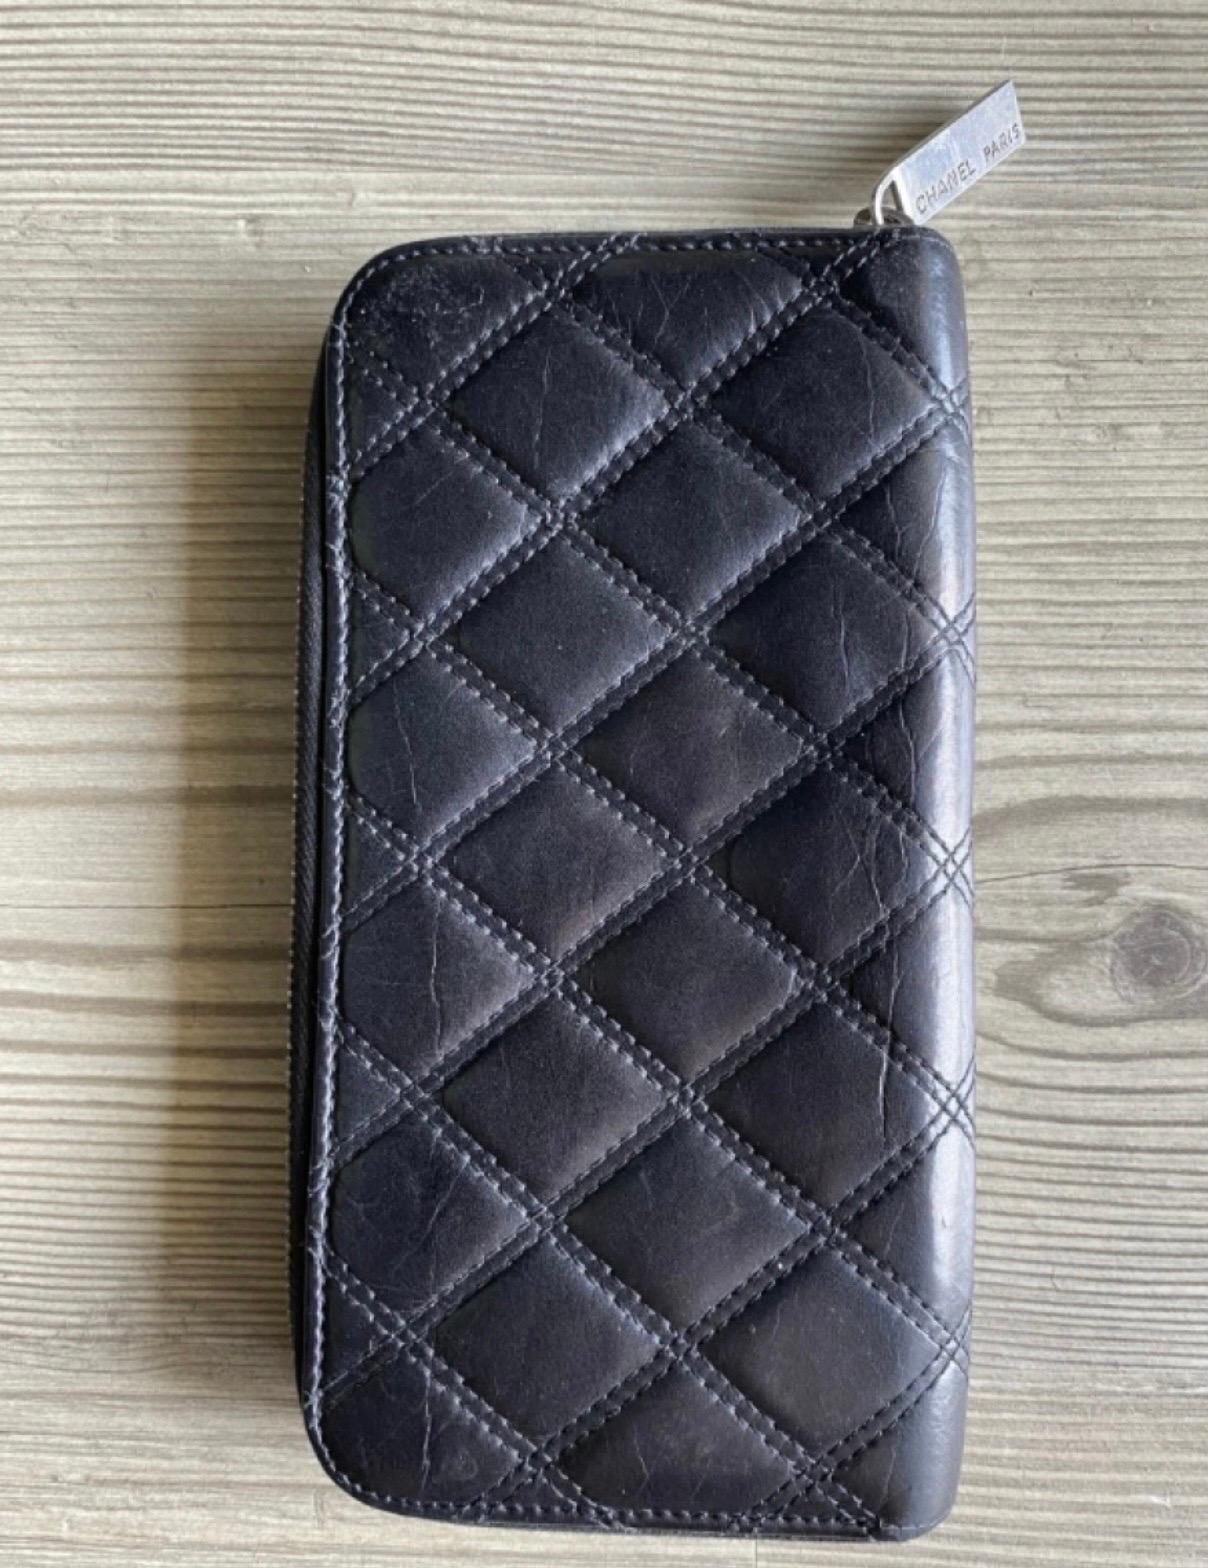 Chanel Brieftasche in schwarzem Leder, mit Zeichen wie auf den Fotos gezeigt, Abmessungen: Basis 10 cm, Höhe 20 cm, mit Reißverschluss. Vintage Accessoire.